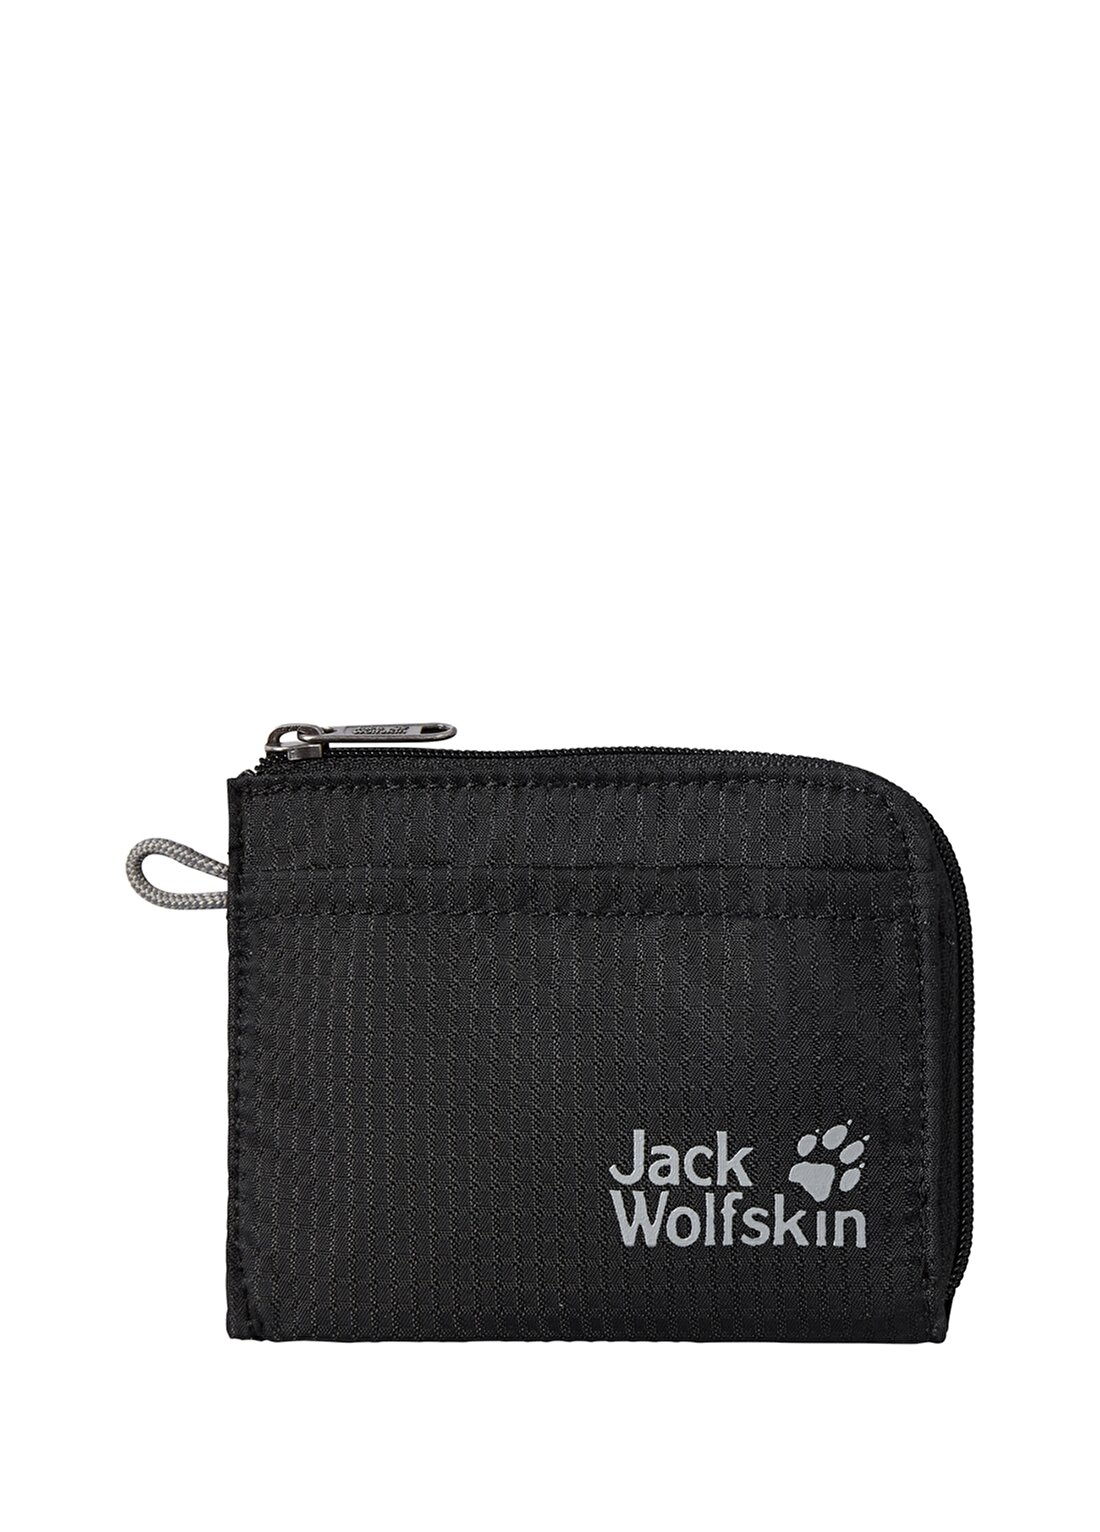 Jack Wolfskin Siyah Unisex 9,5X12 Cm Cüzdan 8006802-6000 KARIBA AIR